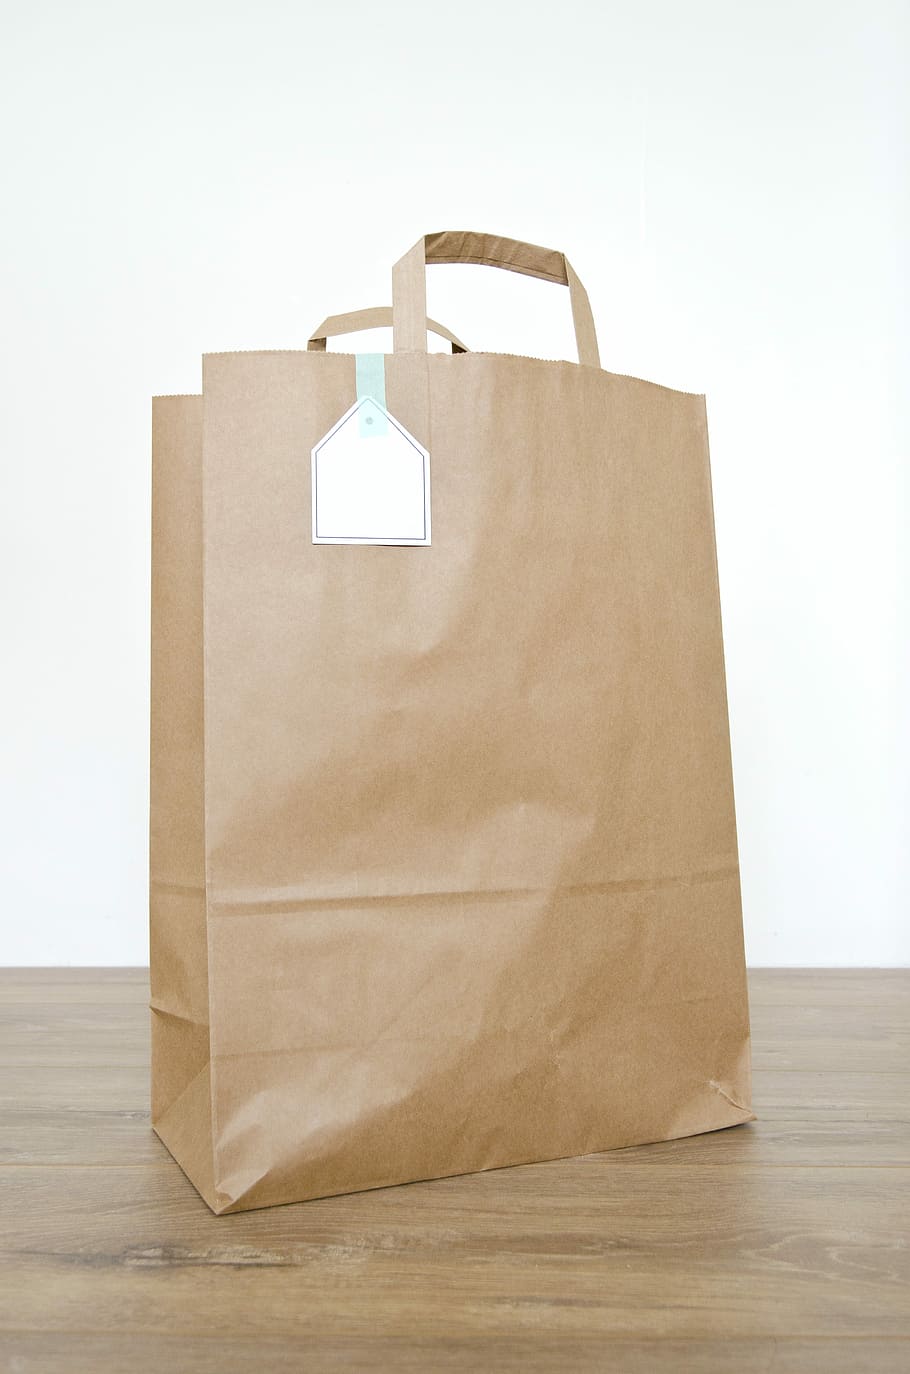 marrom, saco de papel, de madeira, superfície, saco, saco de papel marrom, papel, em branco, recipiente, kraft